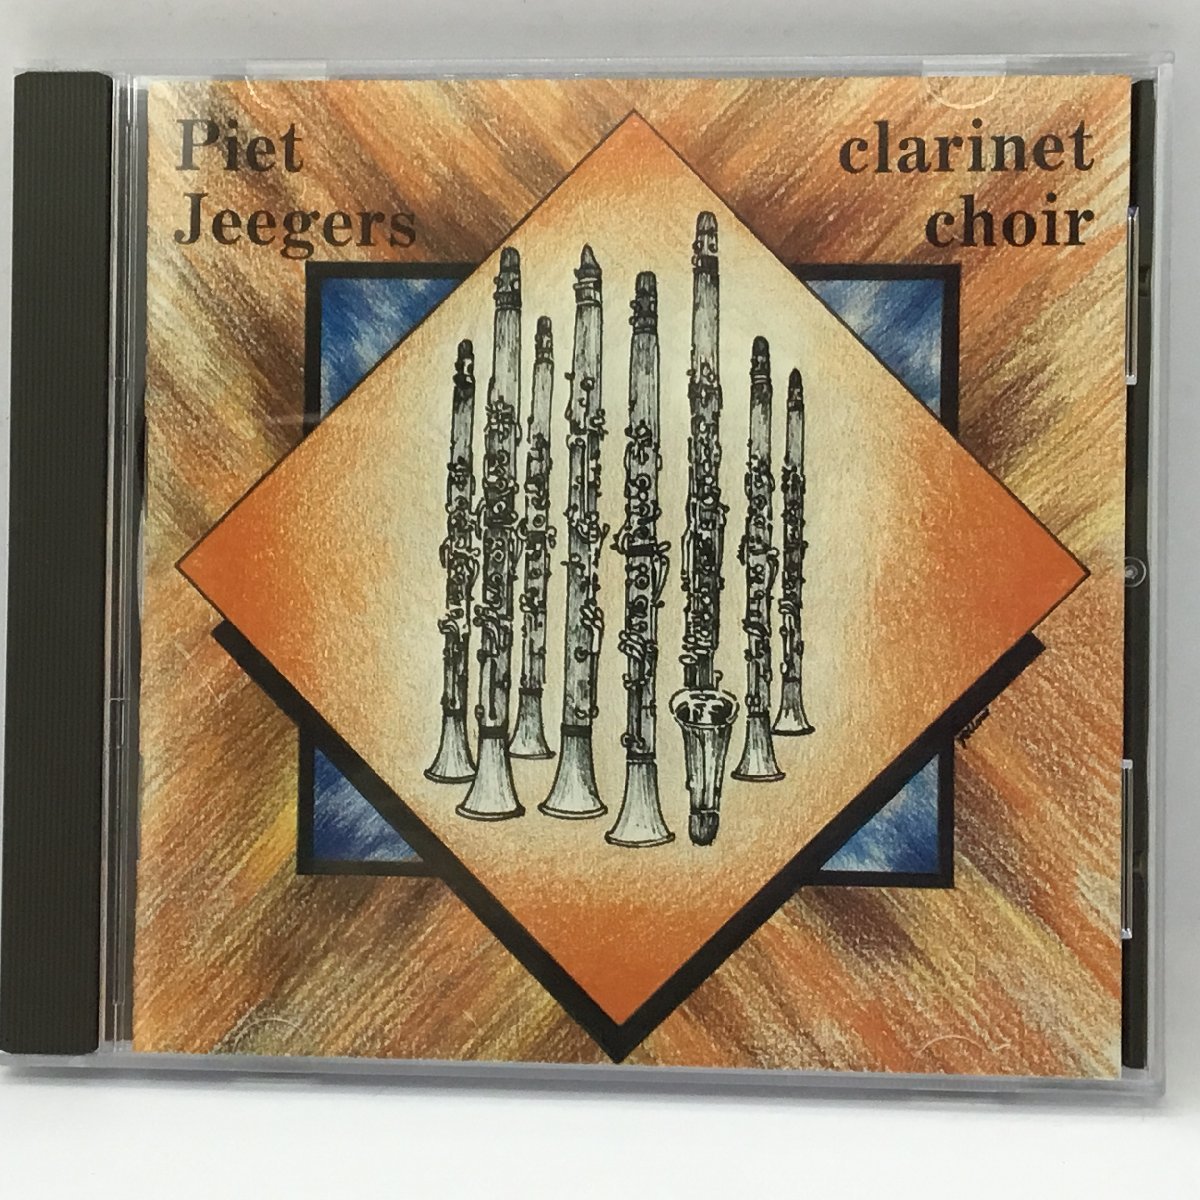 2枚セット ◇ ピート・イェーガー、クラリネット クワイヤー / VOL.1&2 ▲2CD　Piet Jeegers Clarinet Choir - Vol.1&2_画像2